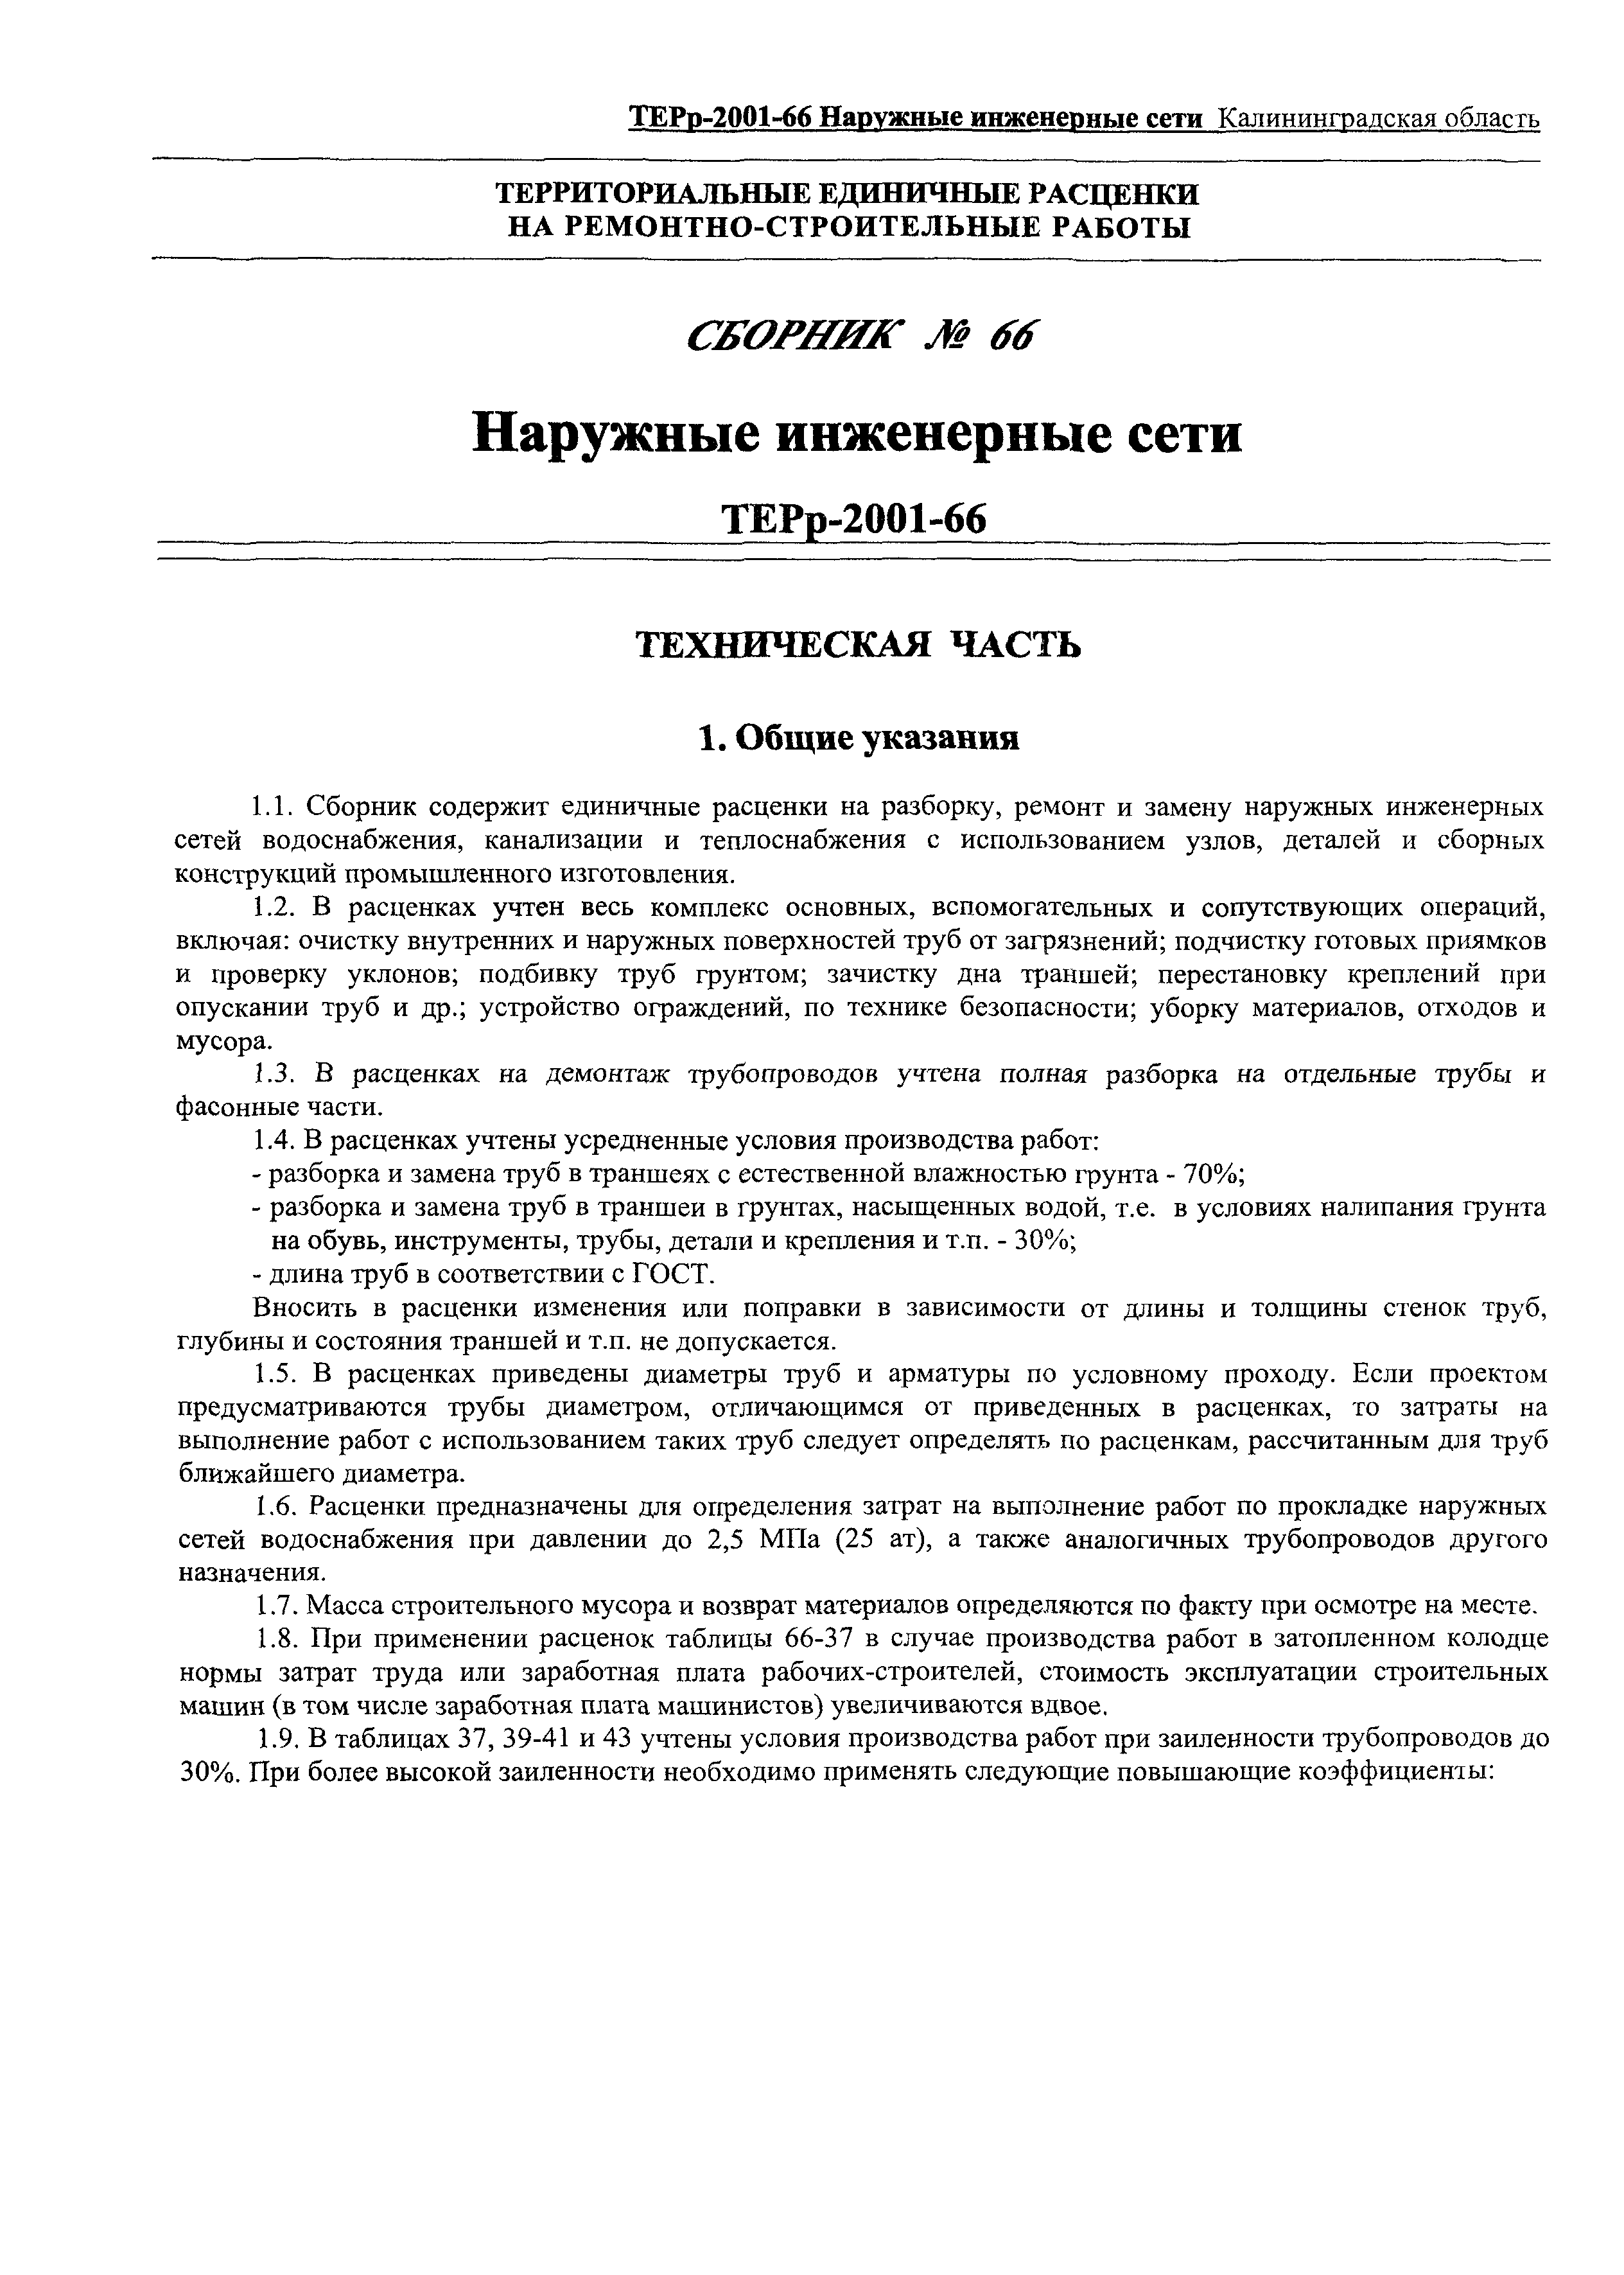 ТЕРр Калининградская область 2001-66